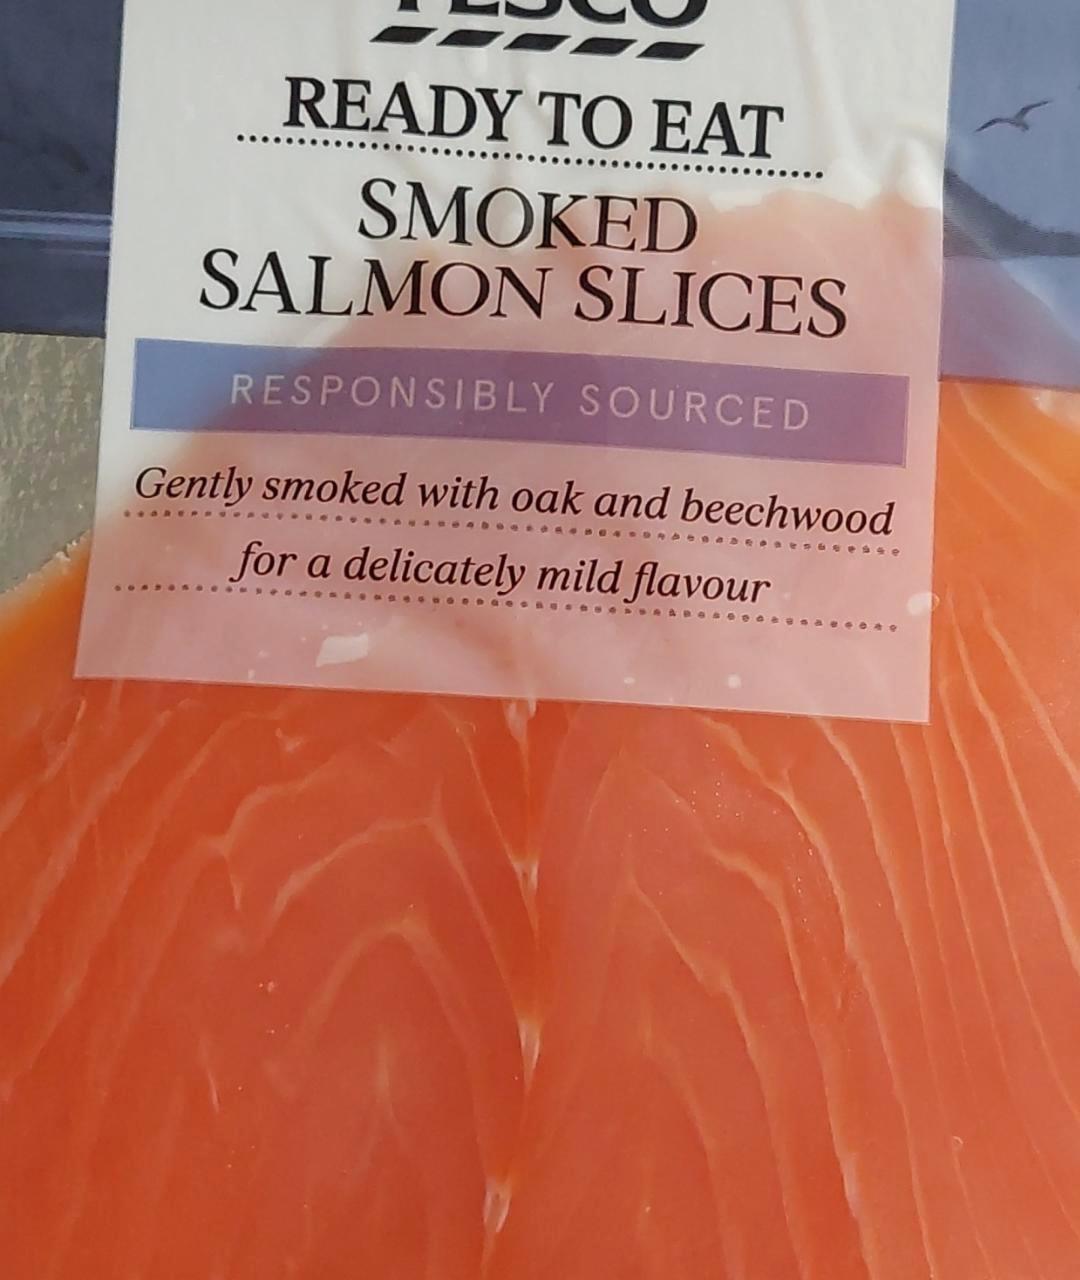 Fotografie - smoked salmon Tesco ready to eat